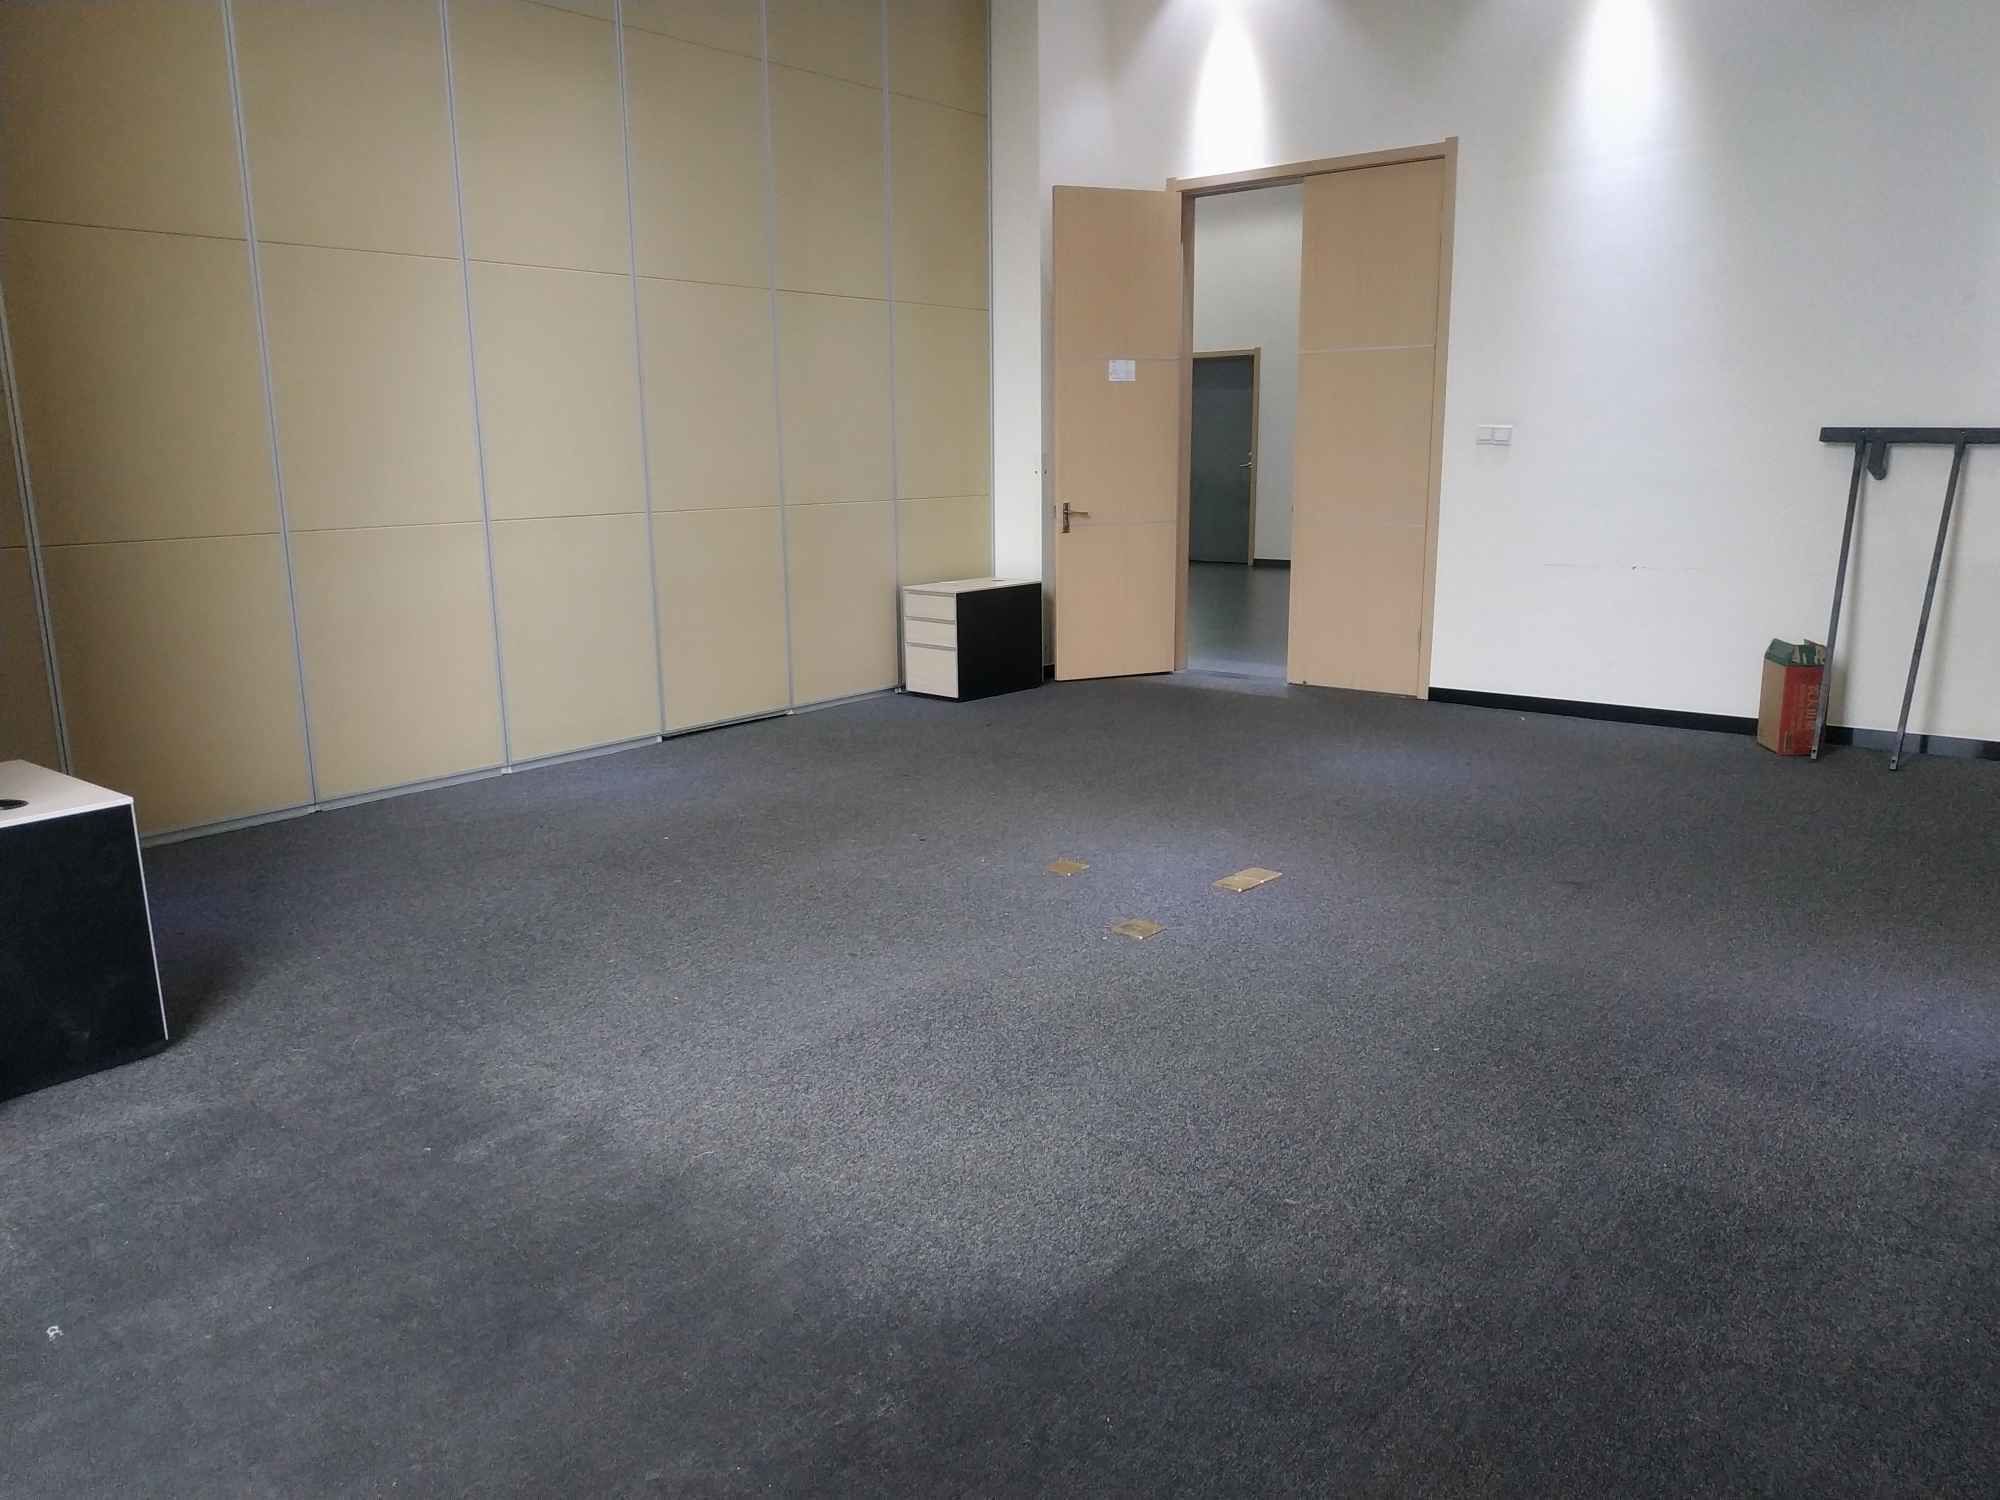 零号湾全球创新创业集聚区139平米办公室出租_1.90元/m²/天